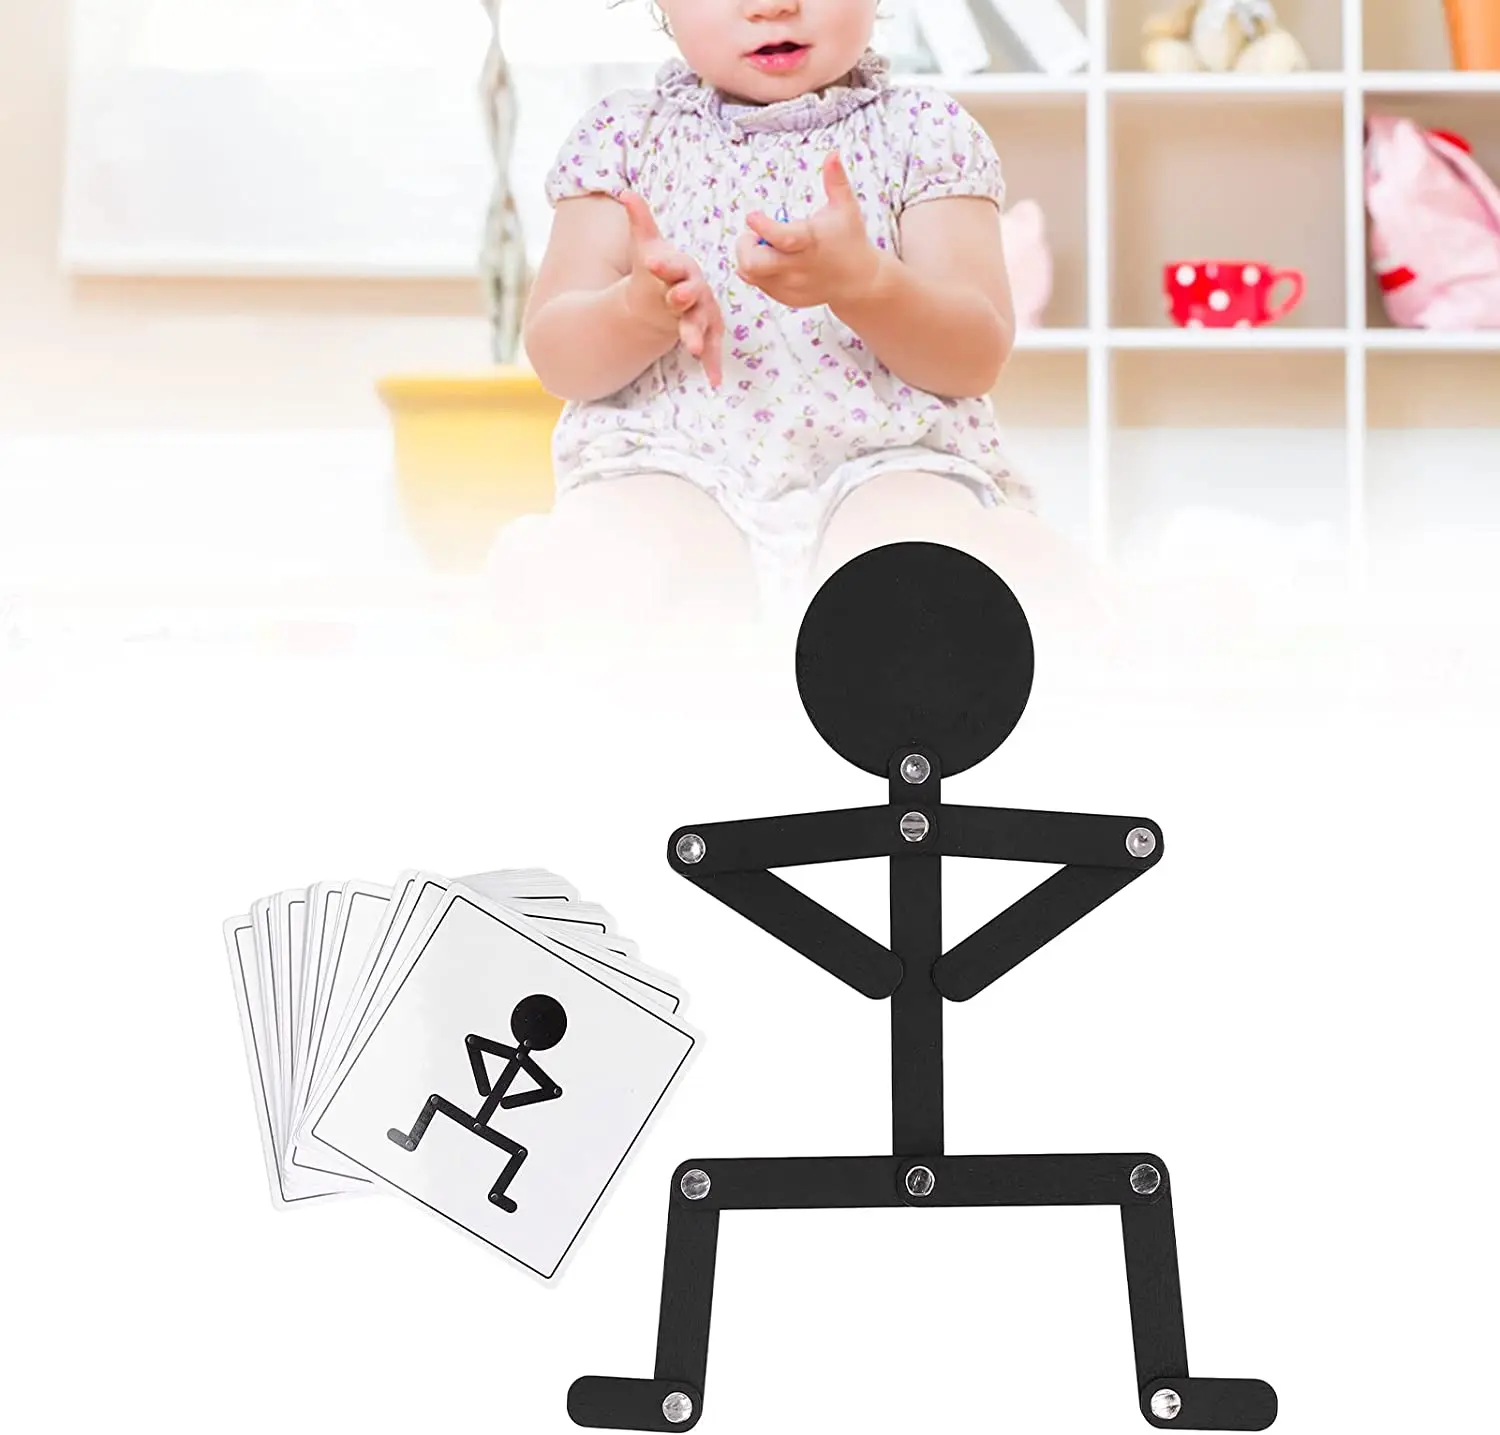 Montessori bebek oyuncakları Eğitim Bulmaca Oyuncak Ahşap Sopa Erkekler Bulmaca Oyunu 24 Bilişsel Kartları Çocuk Bulmacalar Oyuncak Erken Öğrenme Hediye